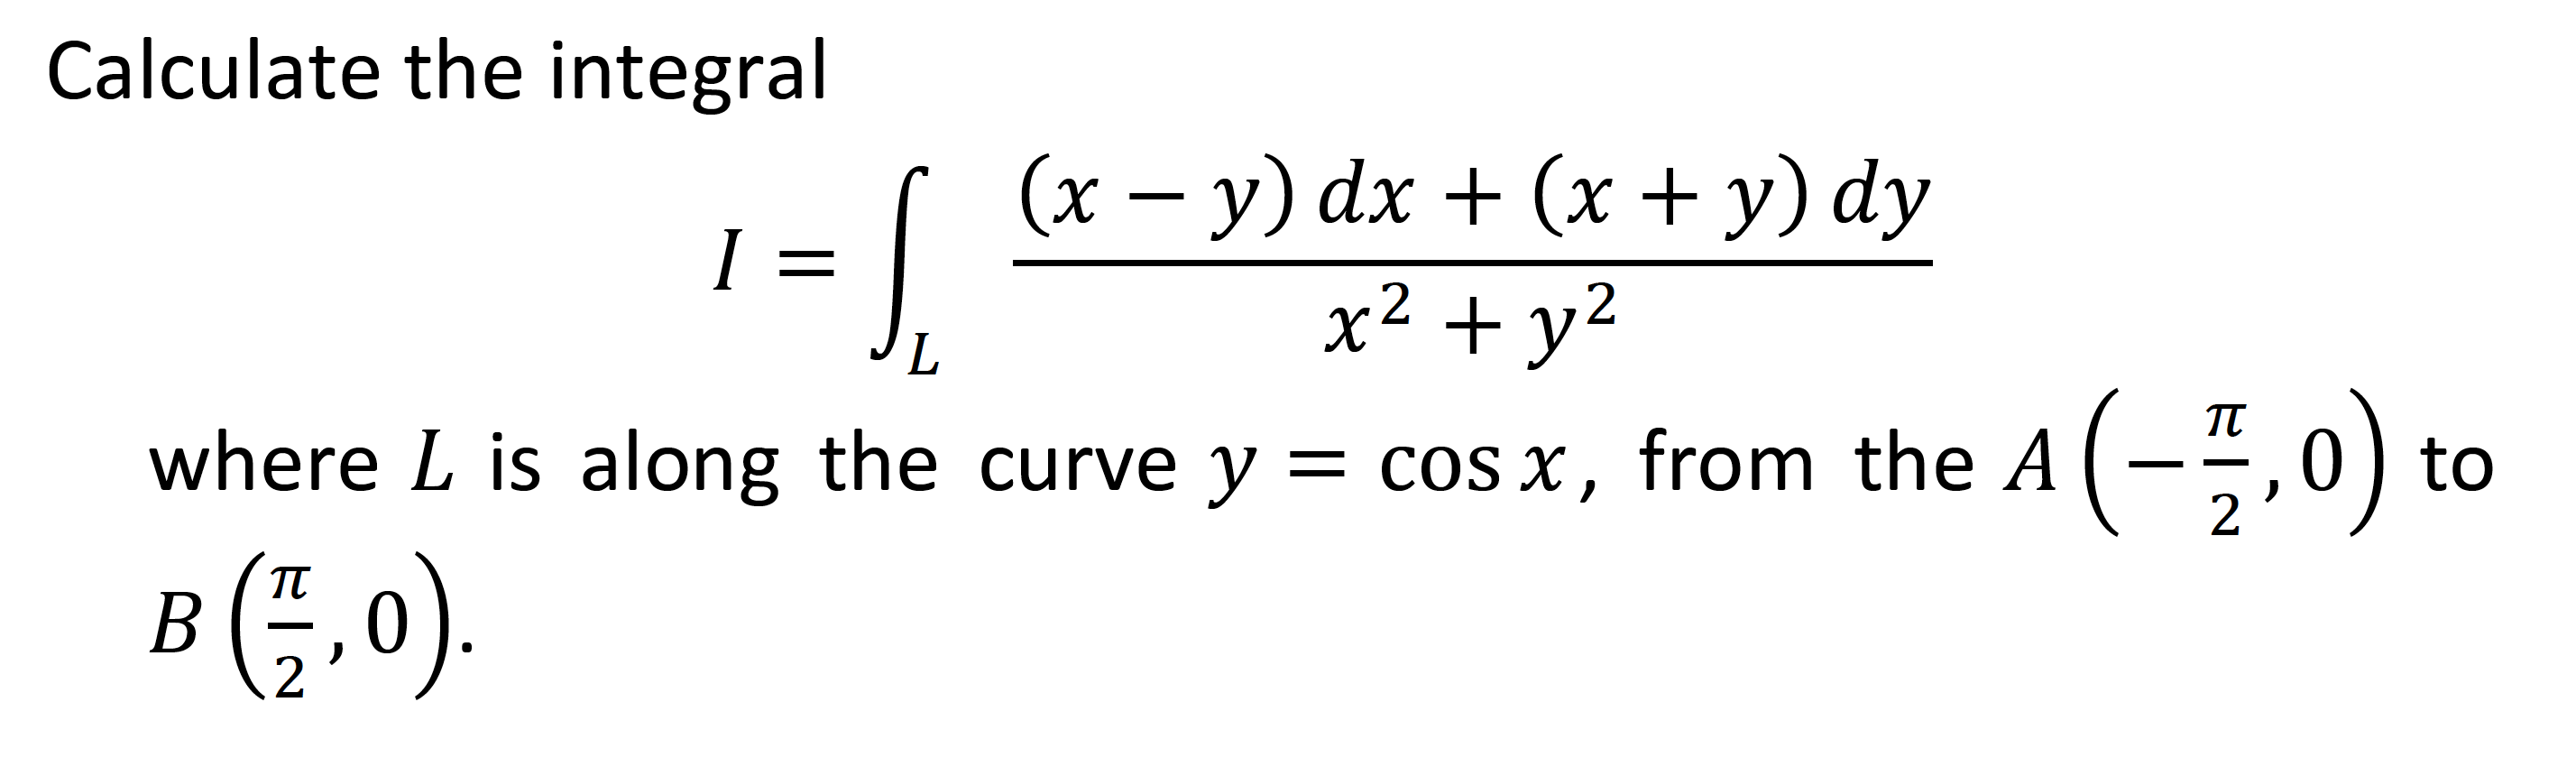 Calculate the integral
(x – y) dx + (x + y) dy
I =
x2 + y2
where L is along the curve y = cos x, from the A
(-5.0) to
B(;,0).
TT
